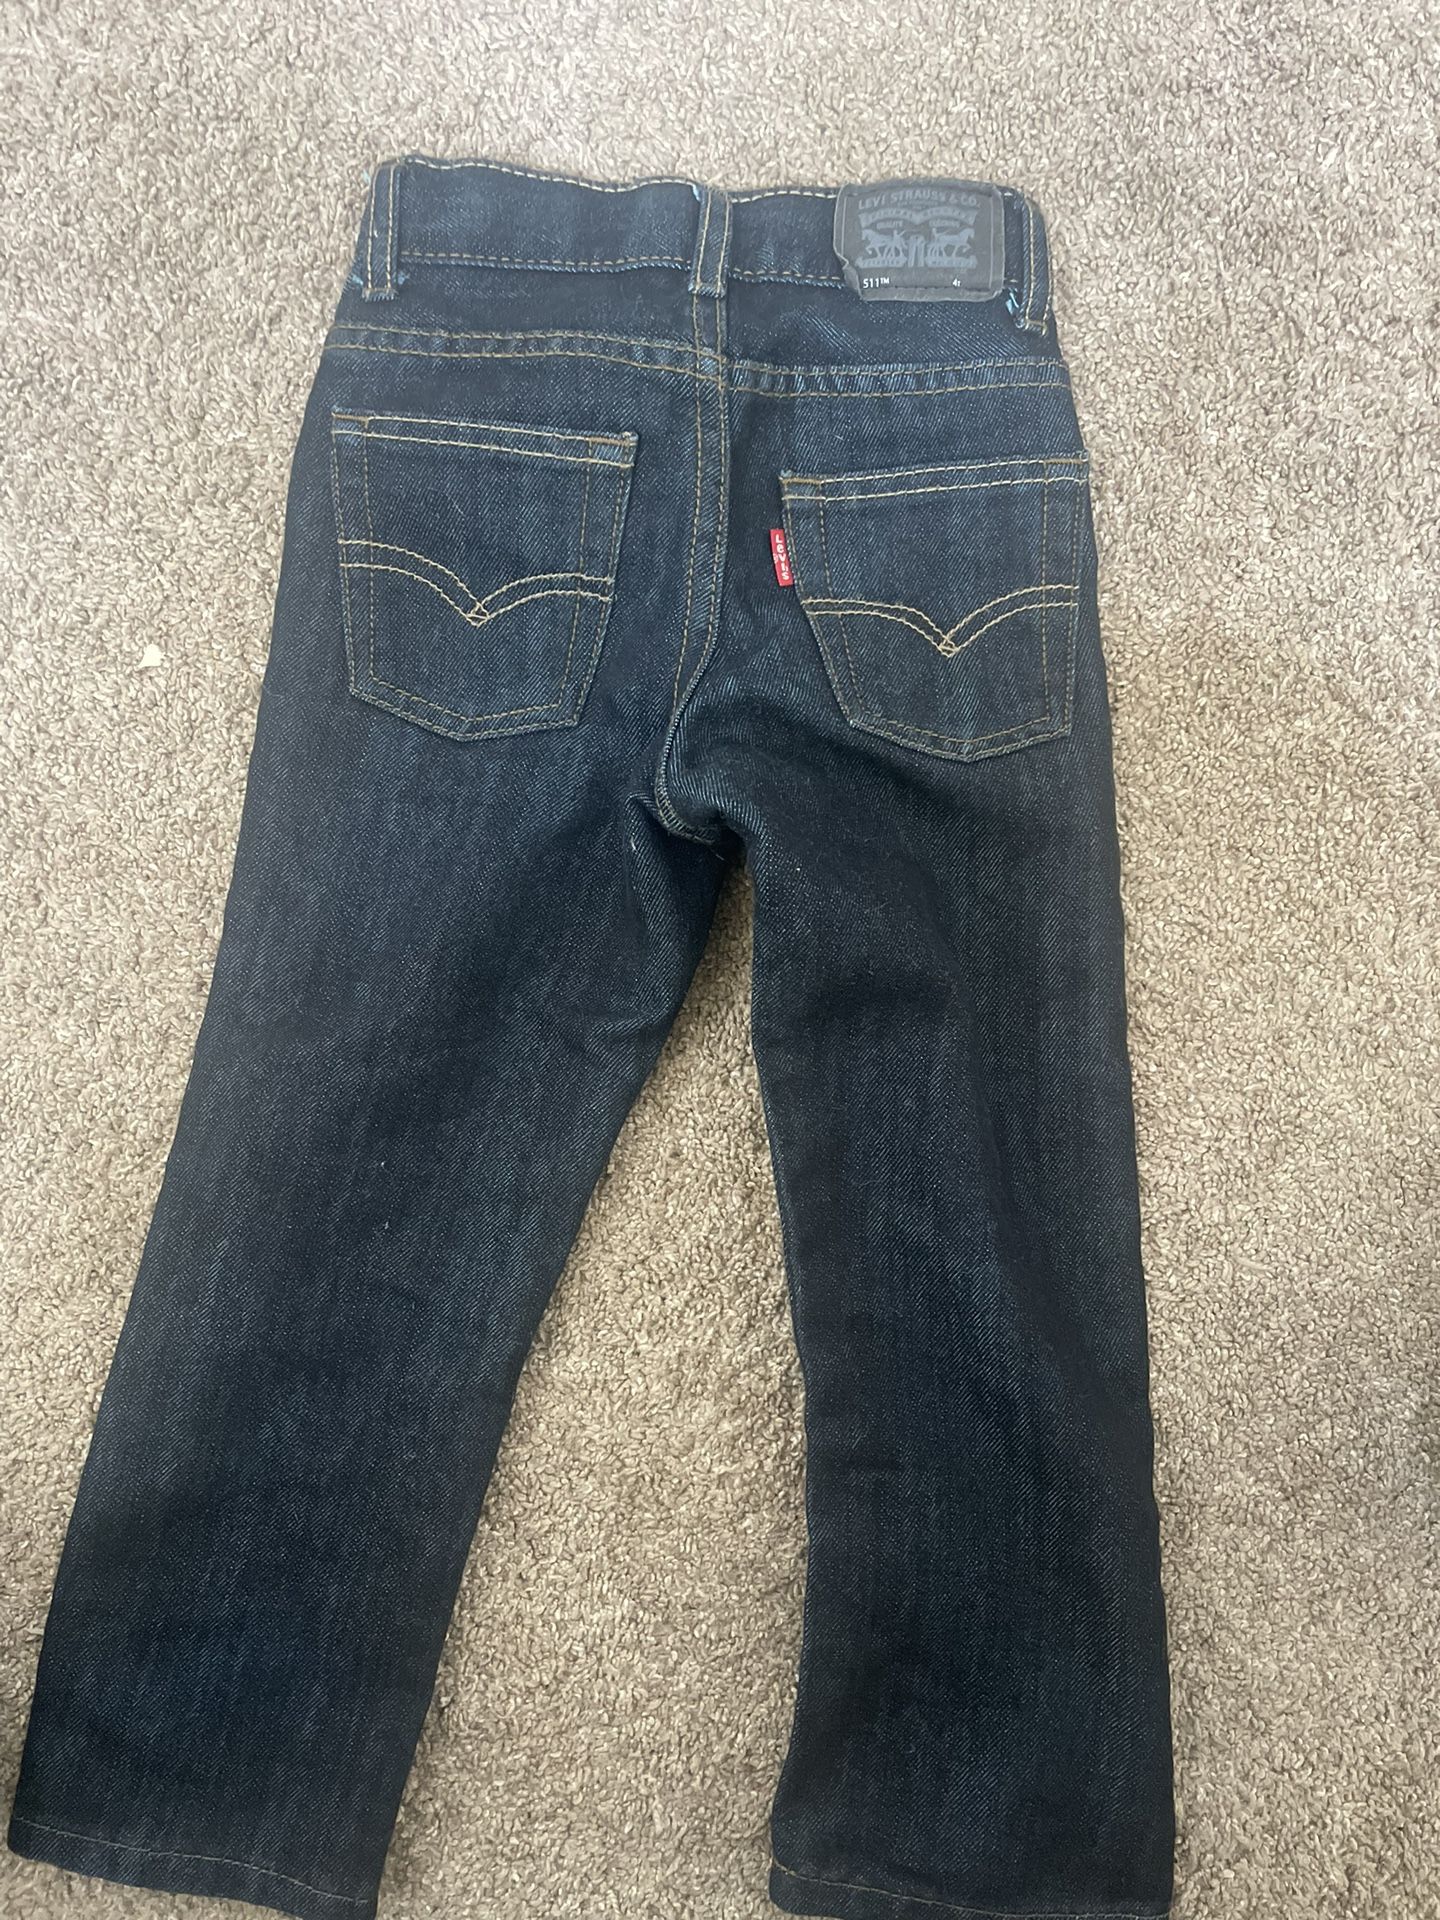 4T Levi Jeans